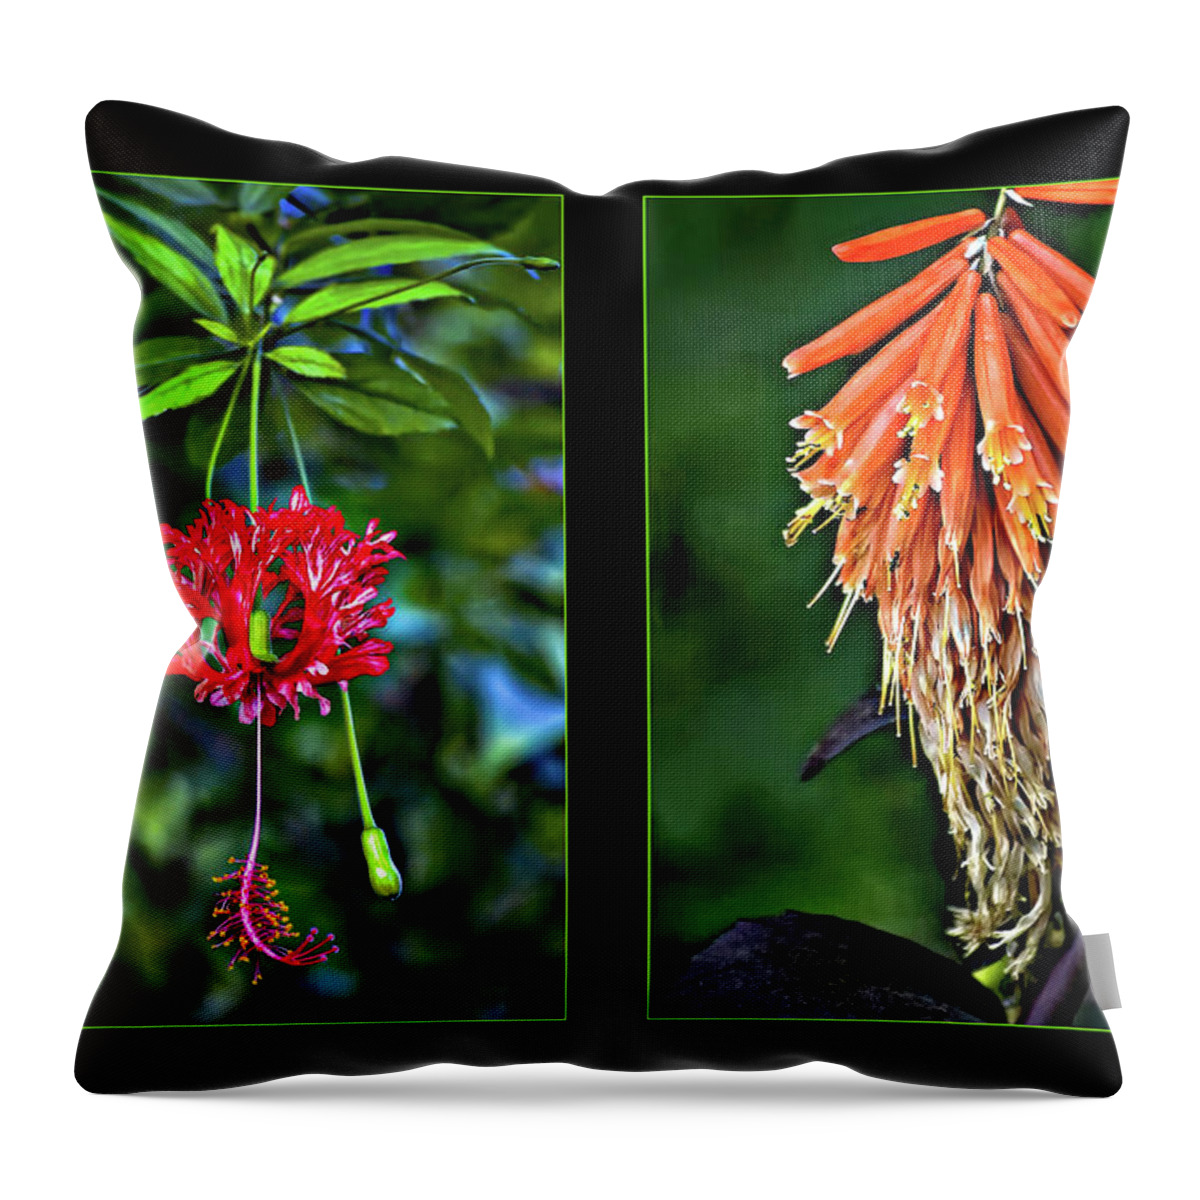 Flower Throw Pillow featuring the photograph Midsummer Dream Diptych by Steve Harrington